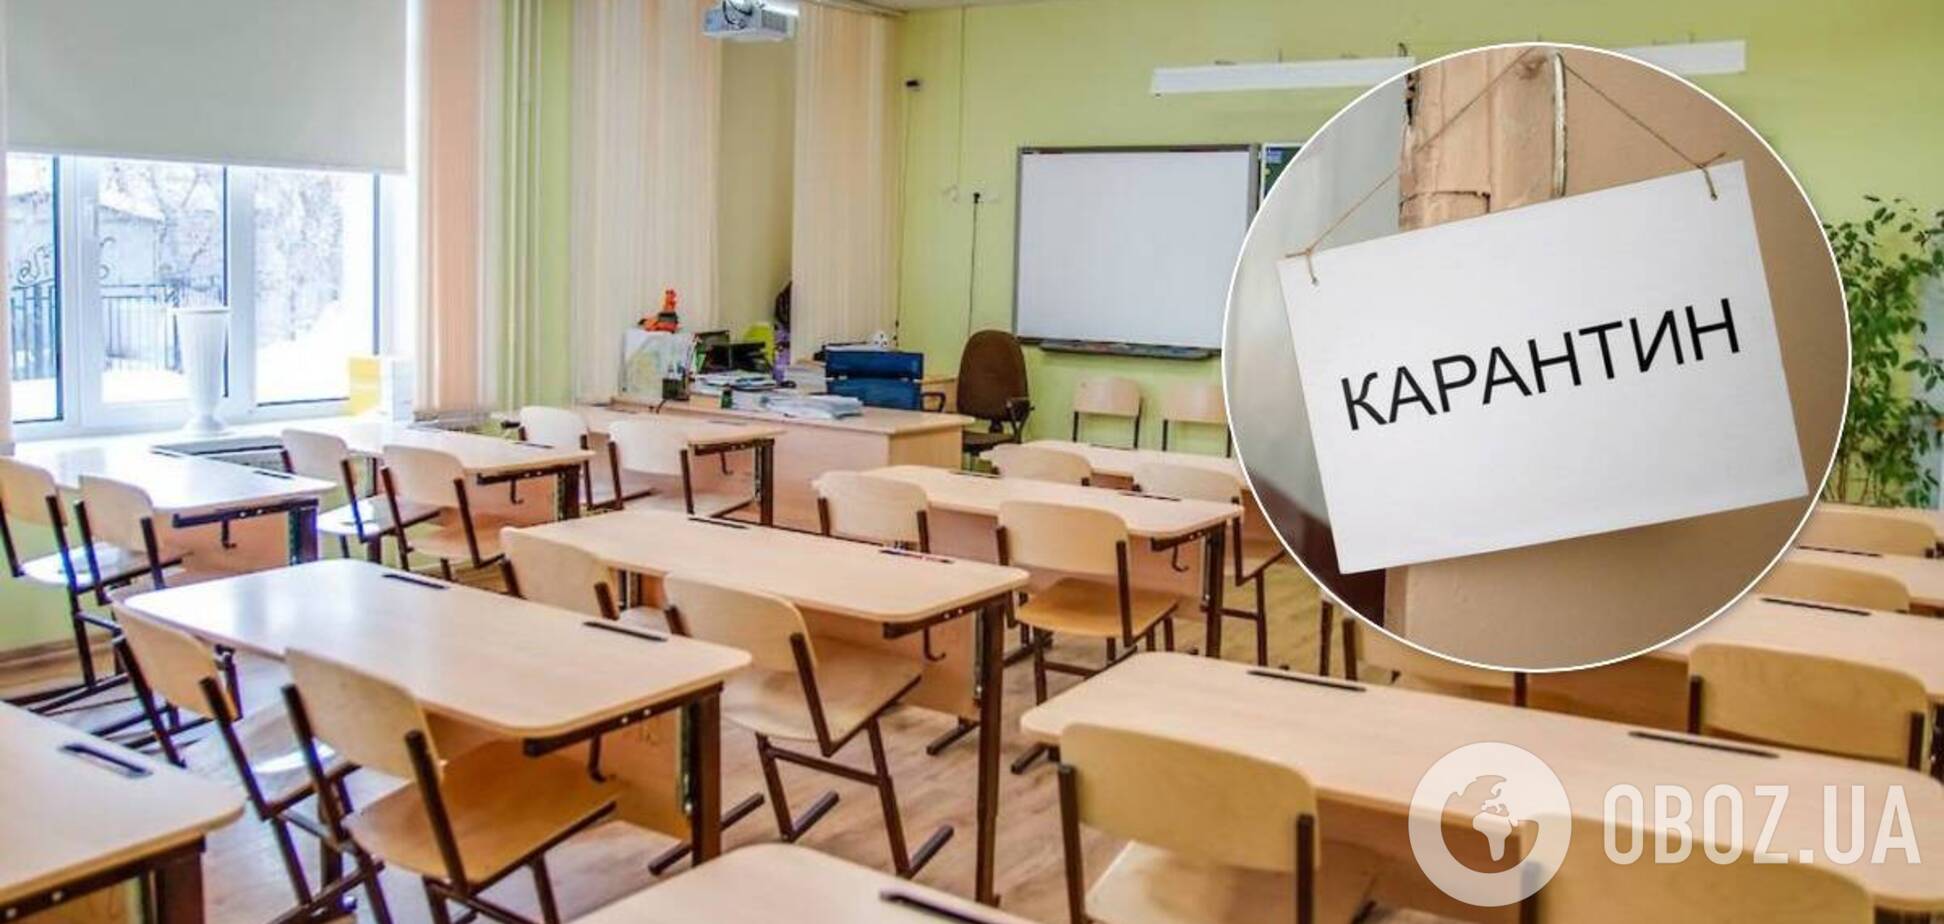 Діти в Україні підуть до школи з 1 вересня: у МОЗ анонсували нові правила